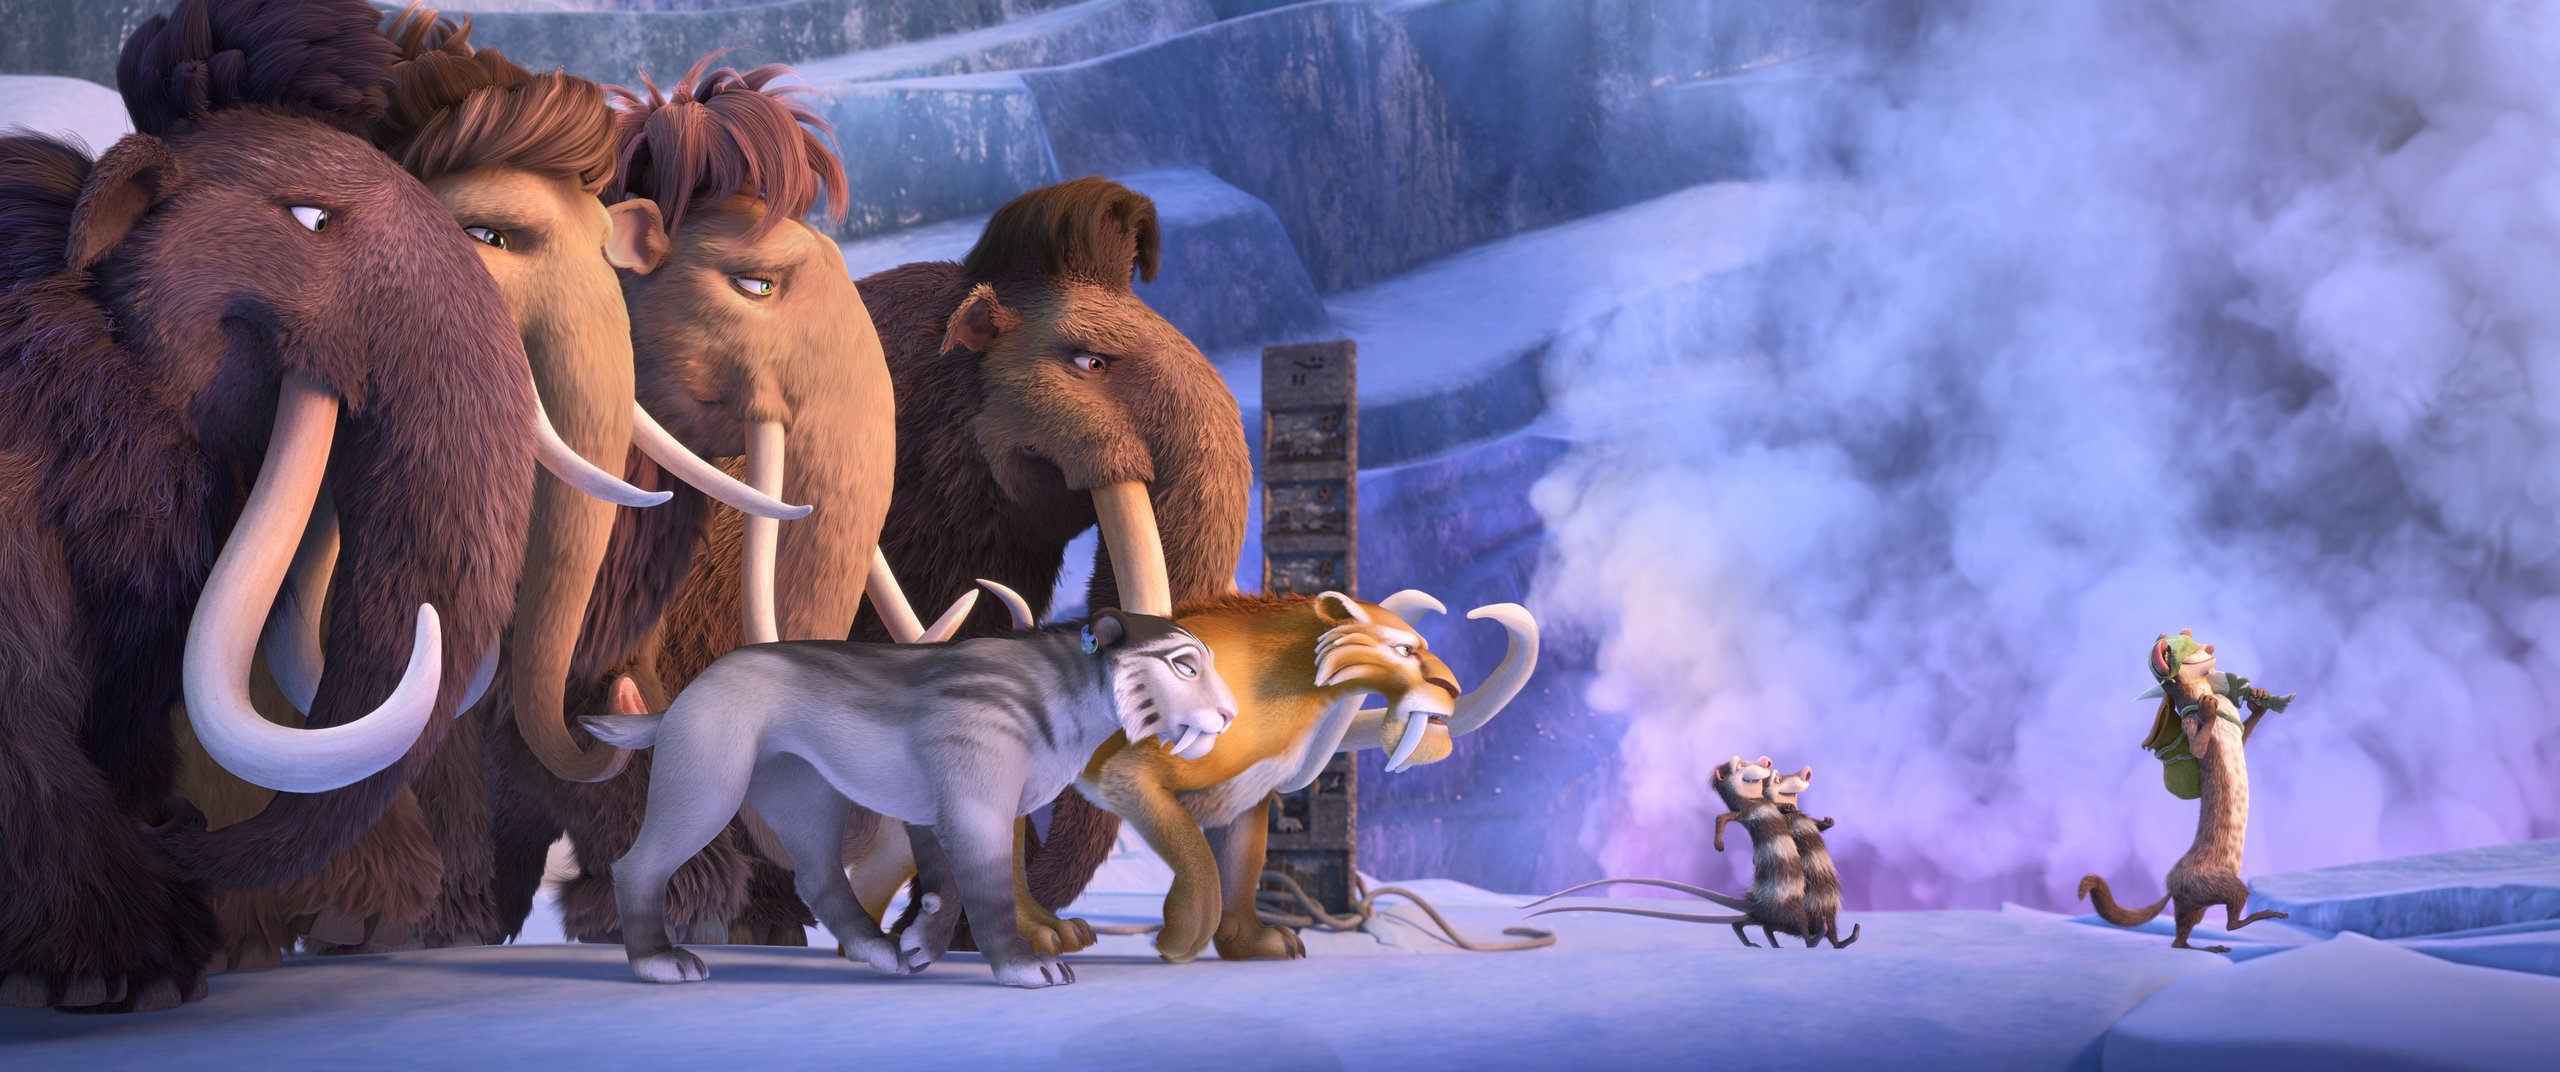 Мультфильм ледниковый период персонажи с фото и именами